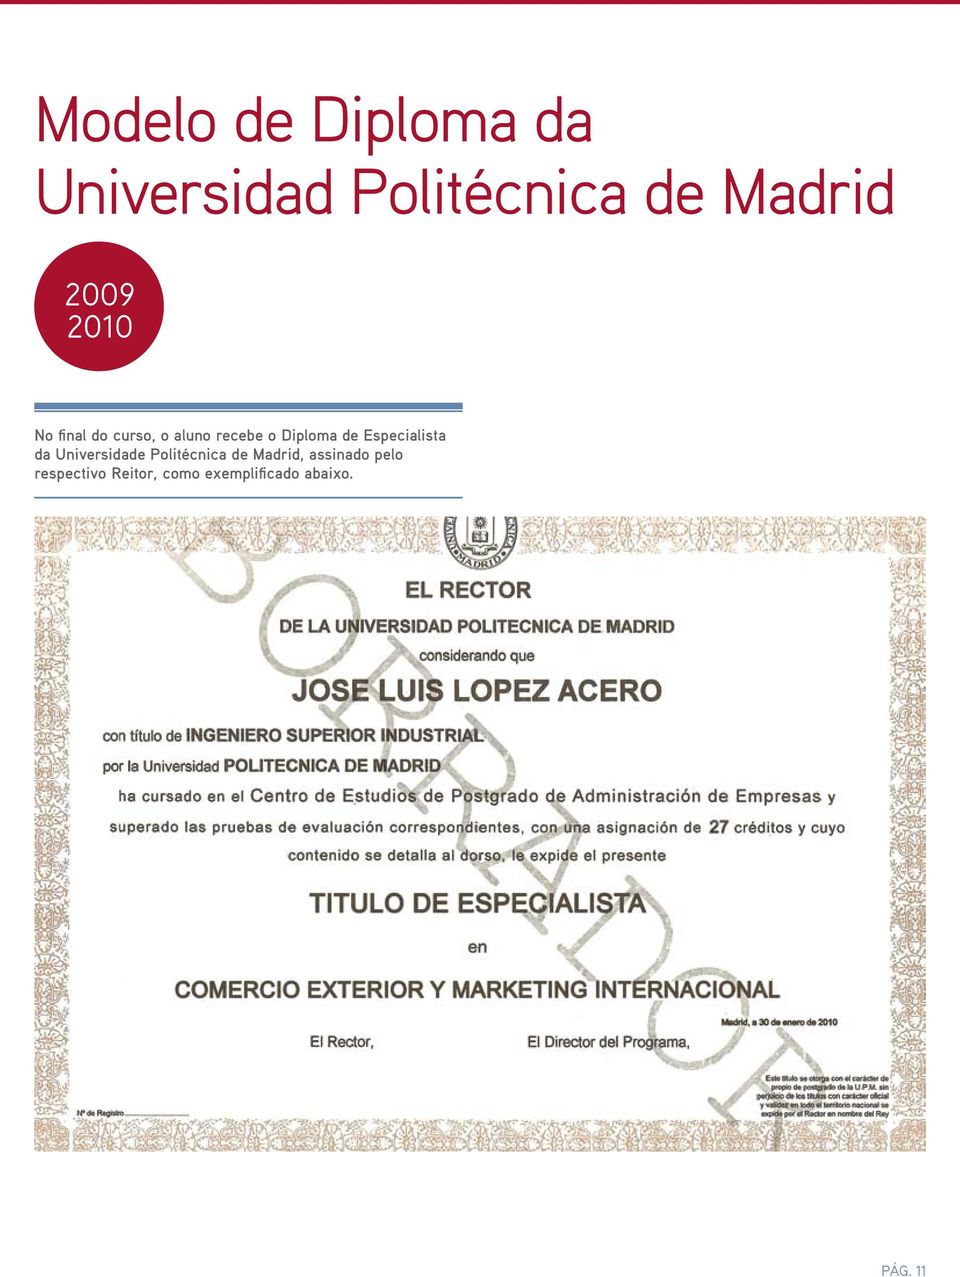 Especialista da Universidade Politécnica de Madrid,